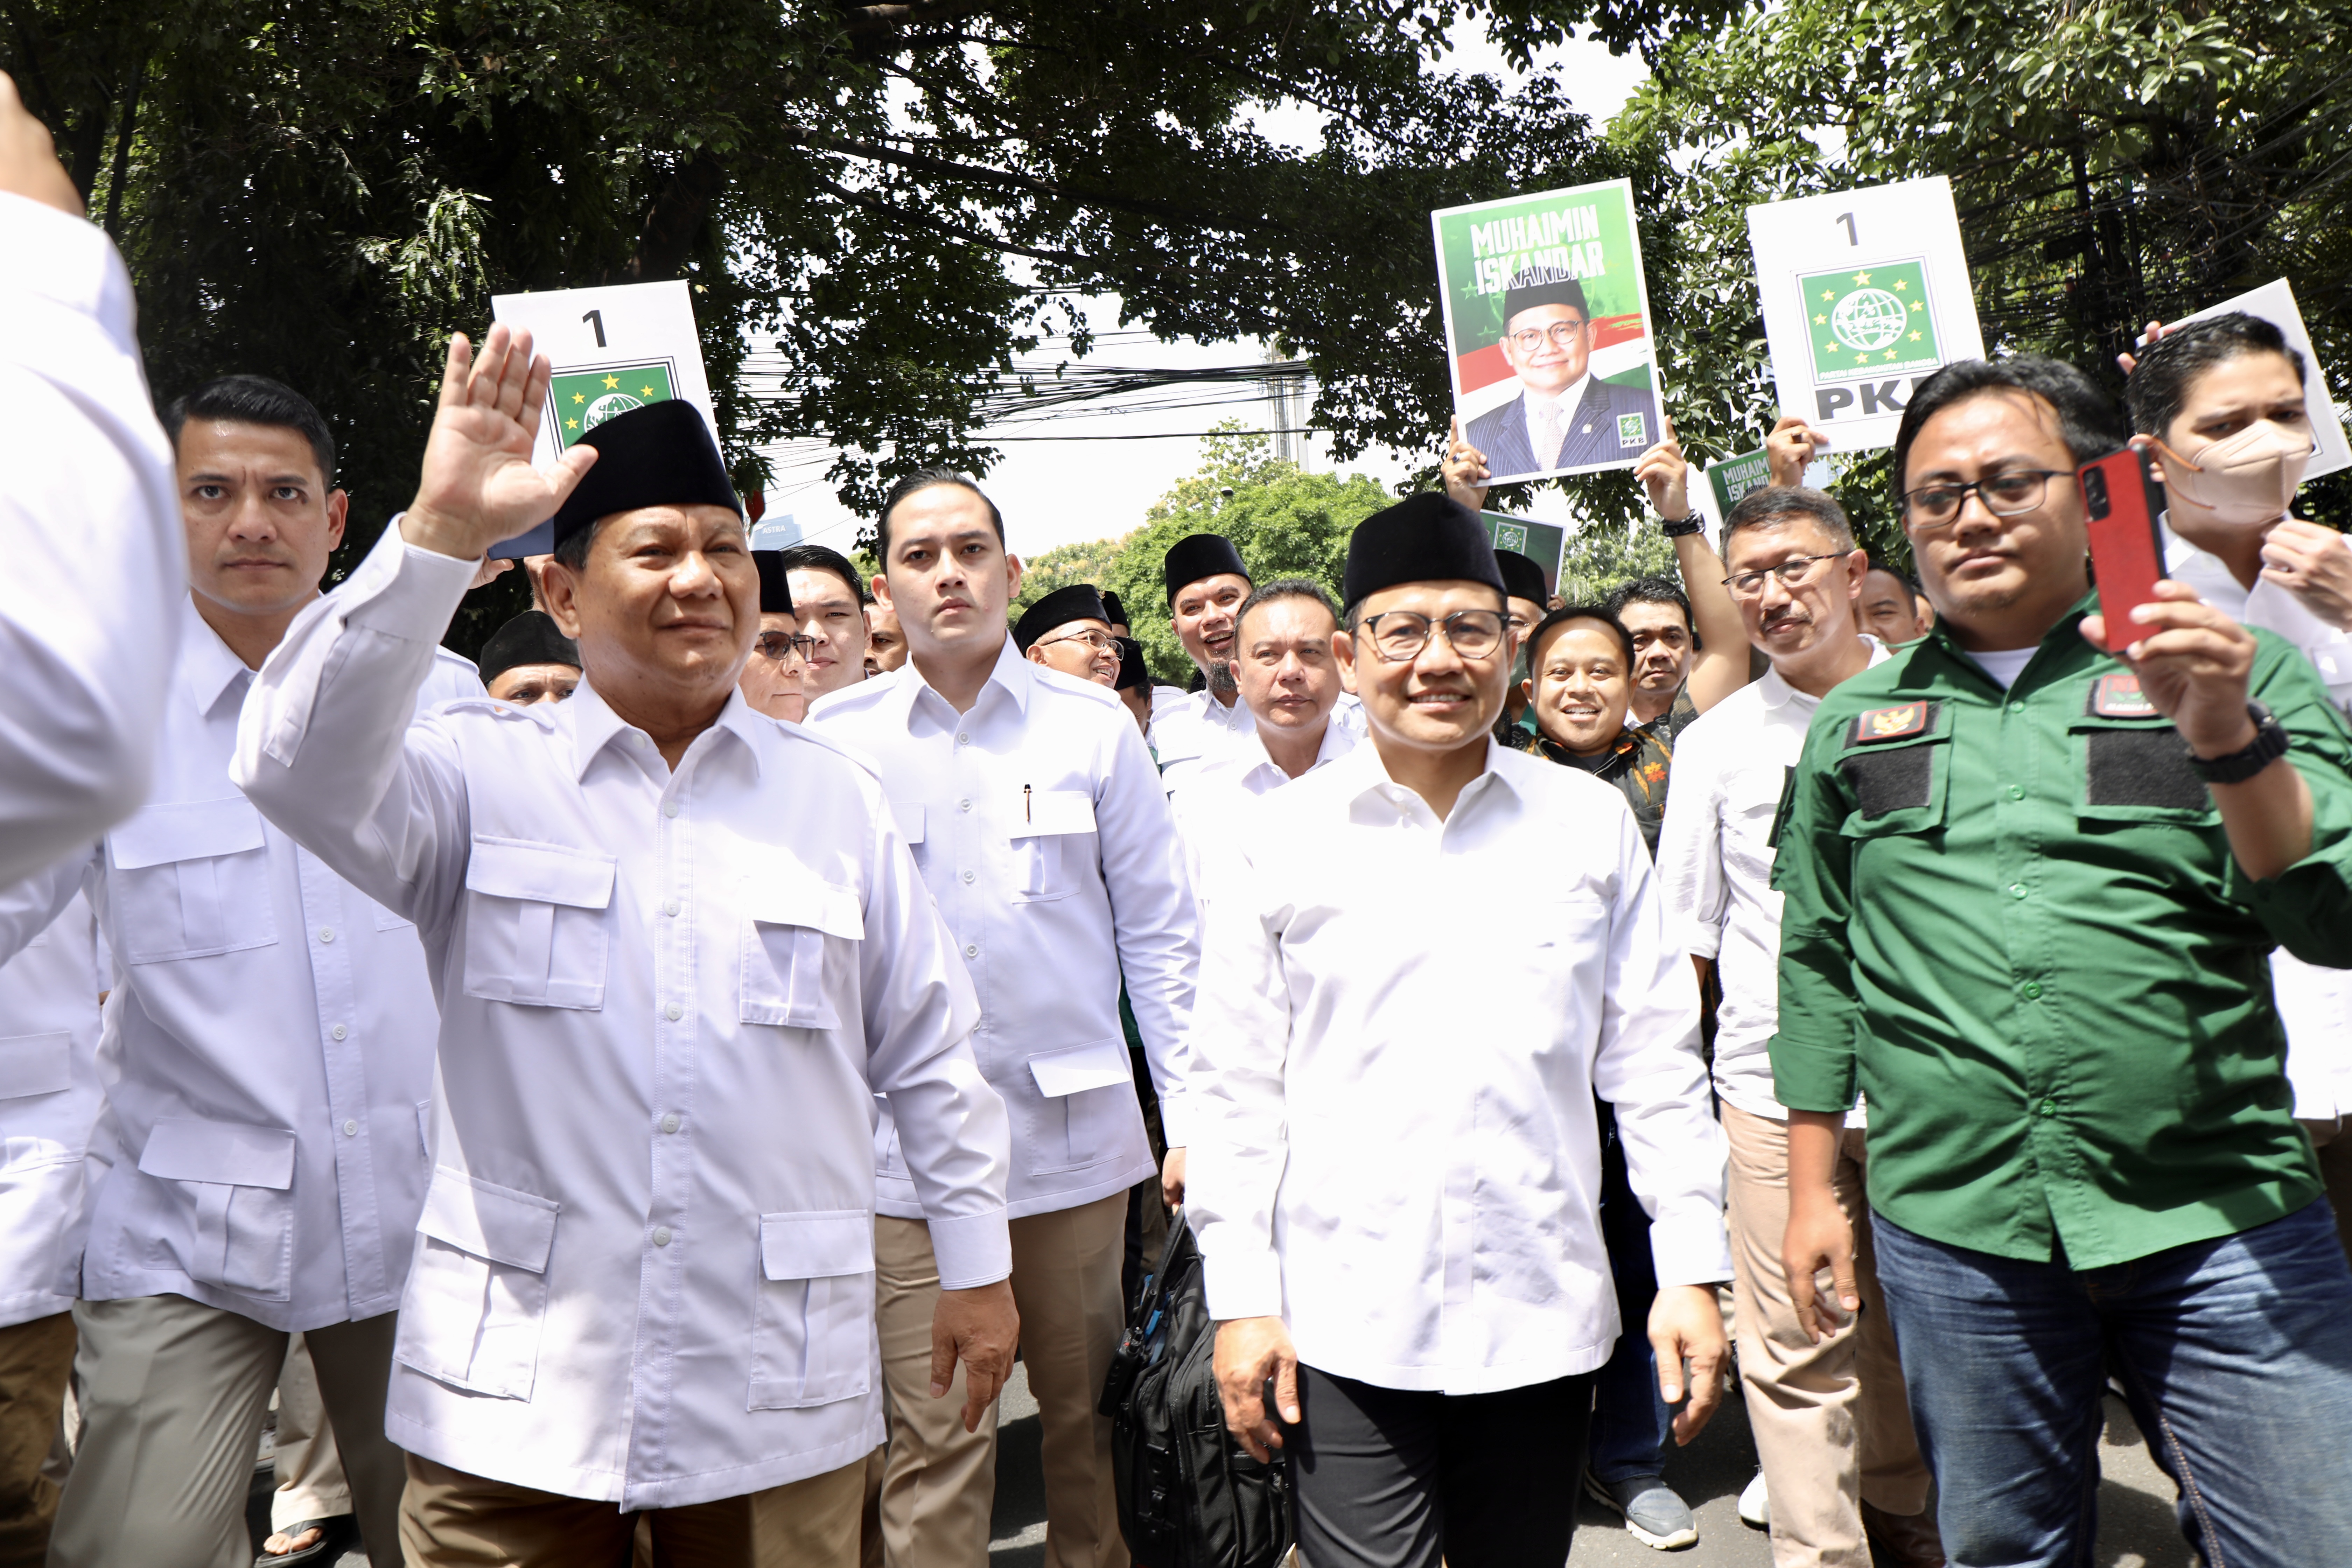 KIR Kebangkitan Indonesia Raya